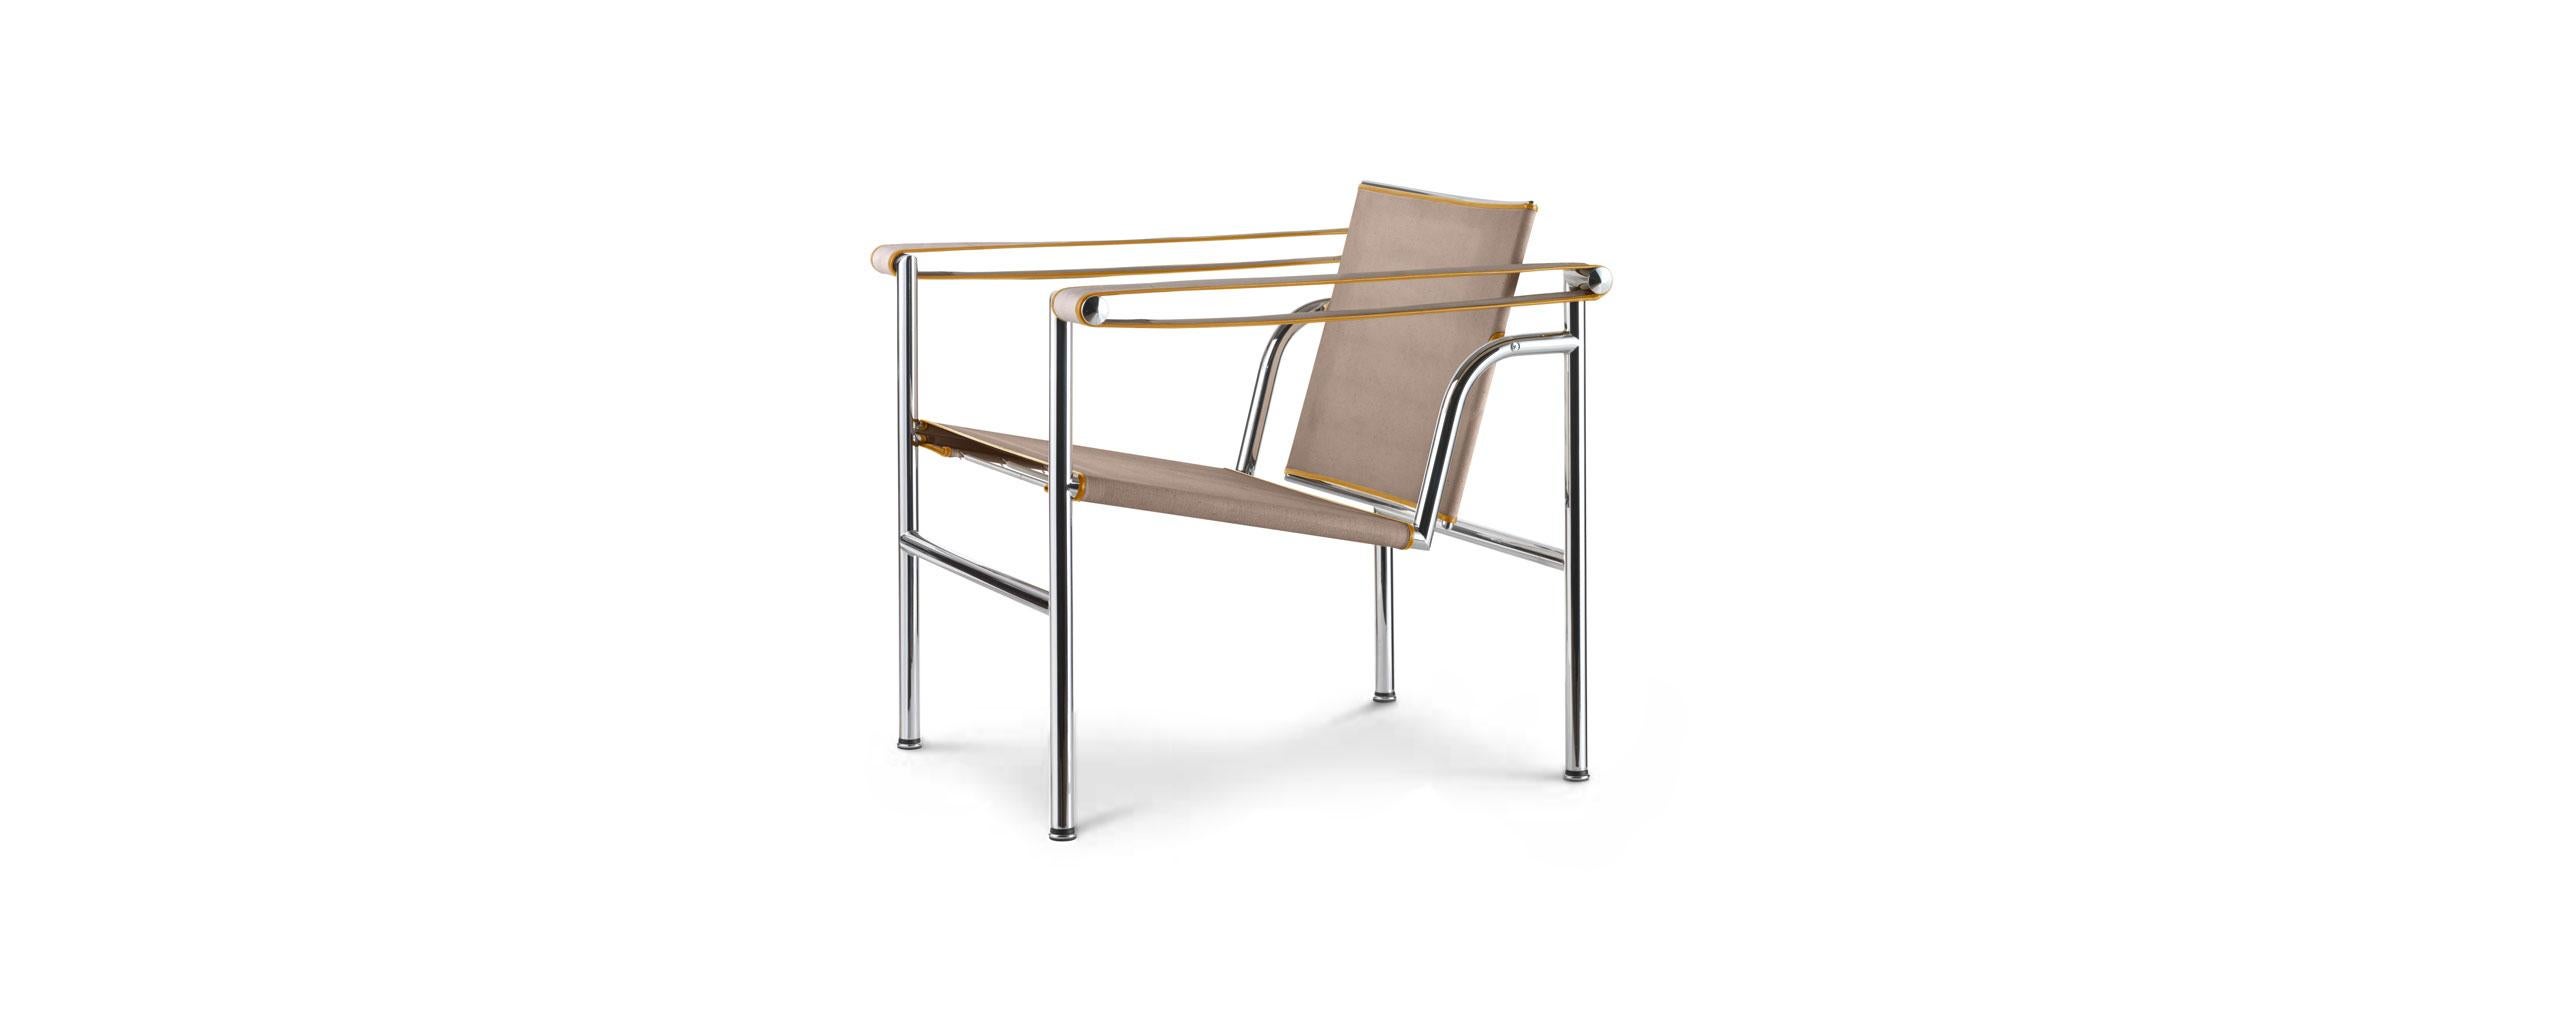 Chaise conçue par Le Corbusier, Pierre Jeanneret, Charlotte Perriand en 1928. Relancé en 2011.
Fabriqué par Cassina en Italie.

Fauteuil avec structure en acier chromé trivalent poli (CR3). Les accoudoirs sont plus larges à l'avant et se